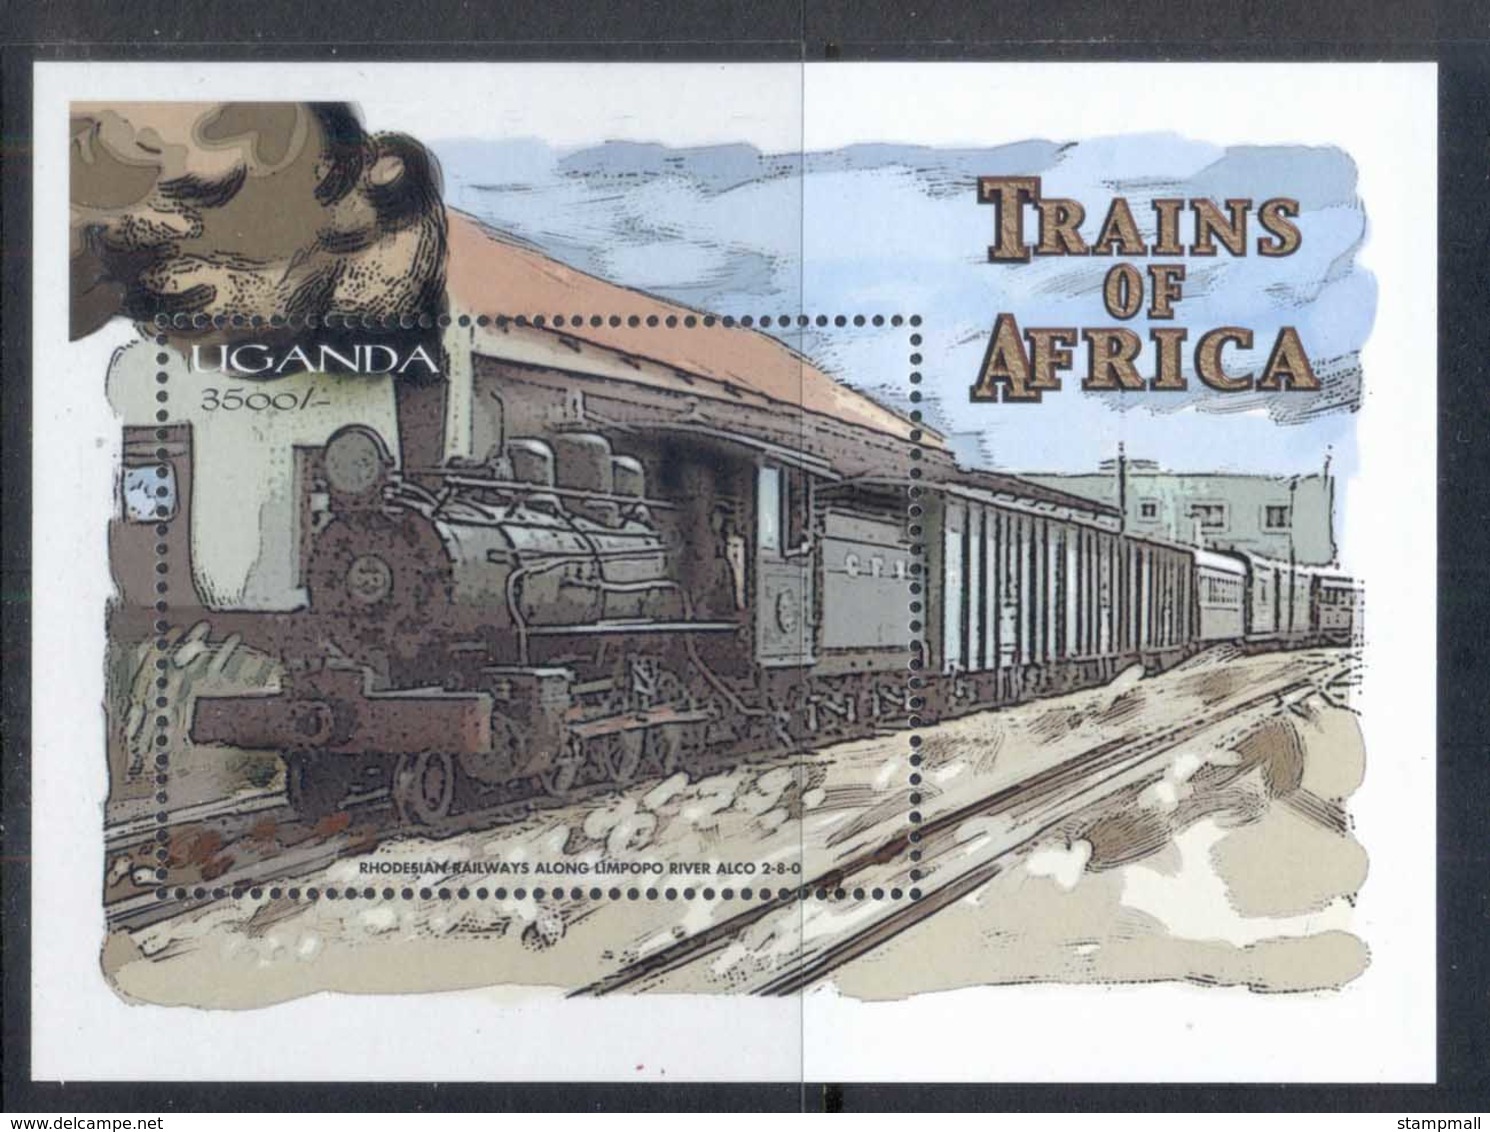 Uganda 2000 Trains, Rhodesian Railways MS MUH - Uganda (1962-...)